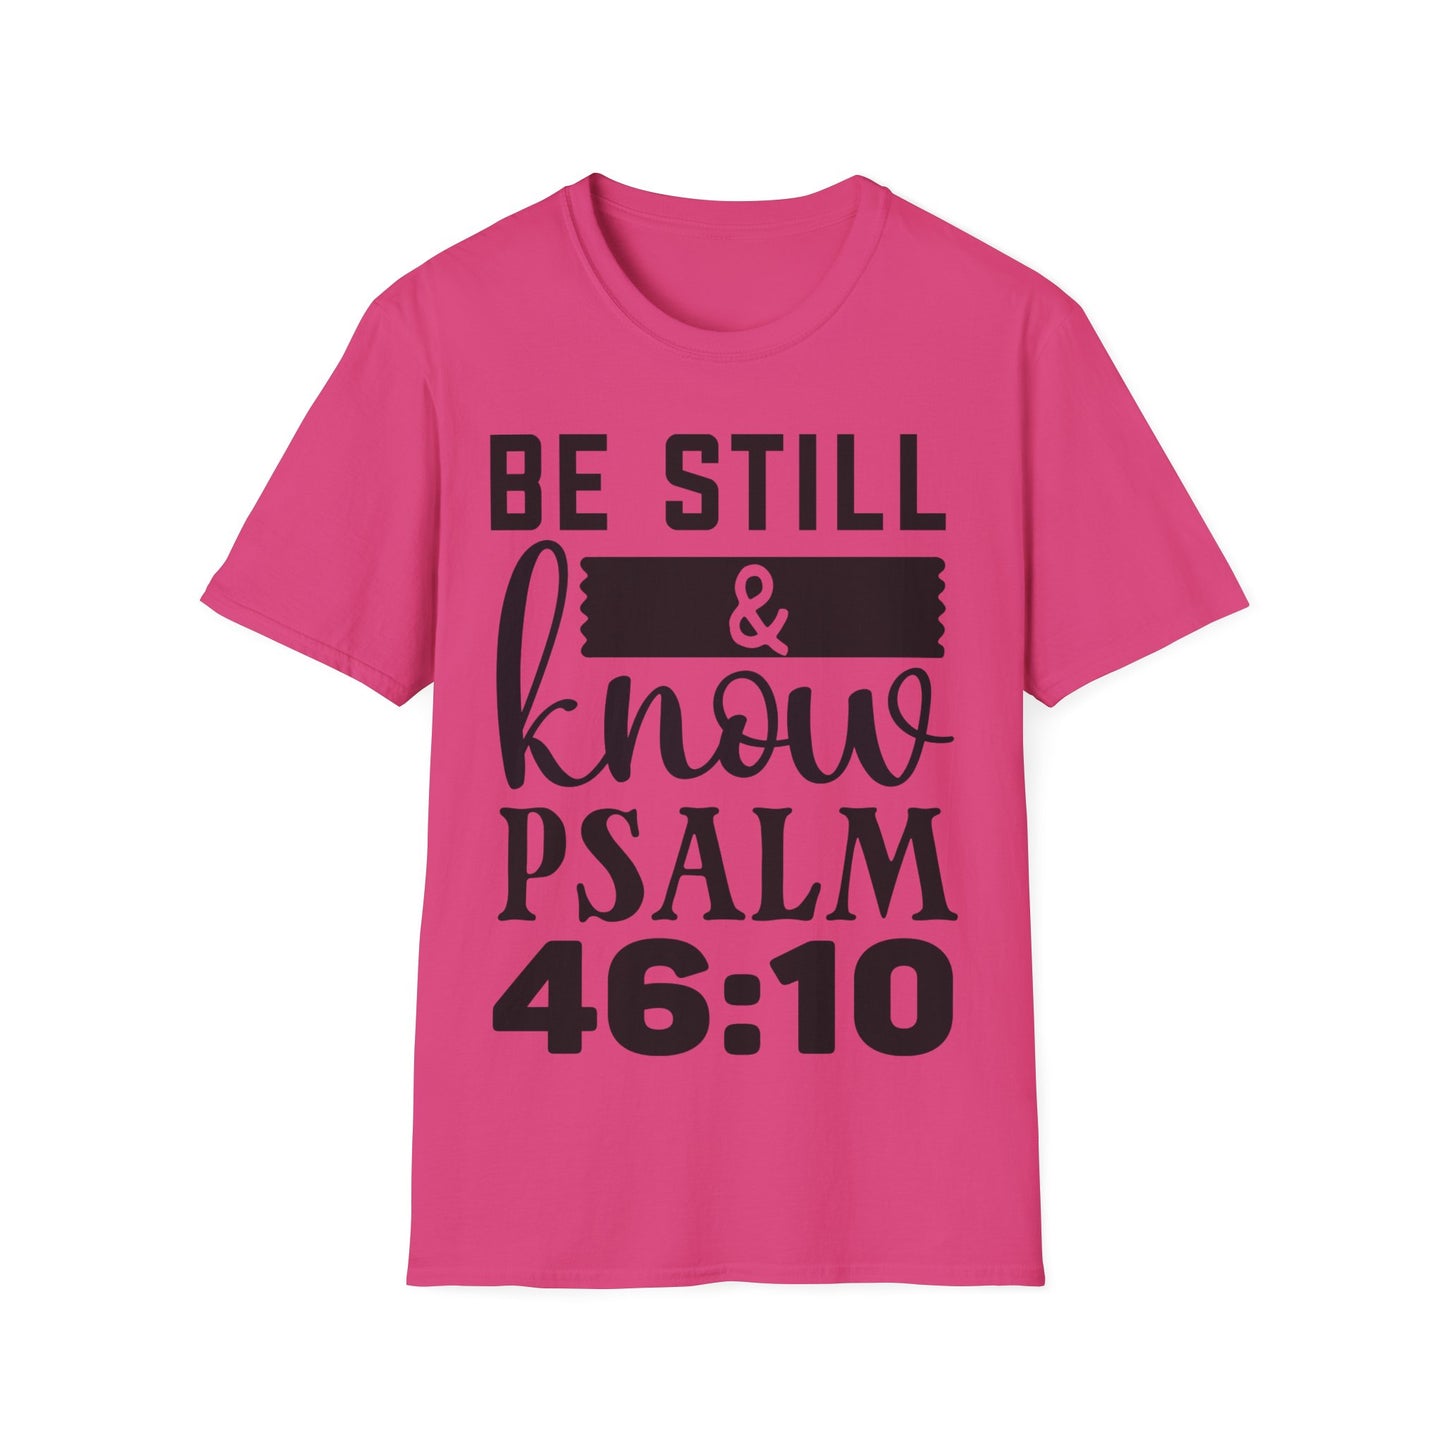 Be Still & Know Psalm 46:10 (2) Triple Viking T-Shirt